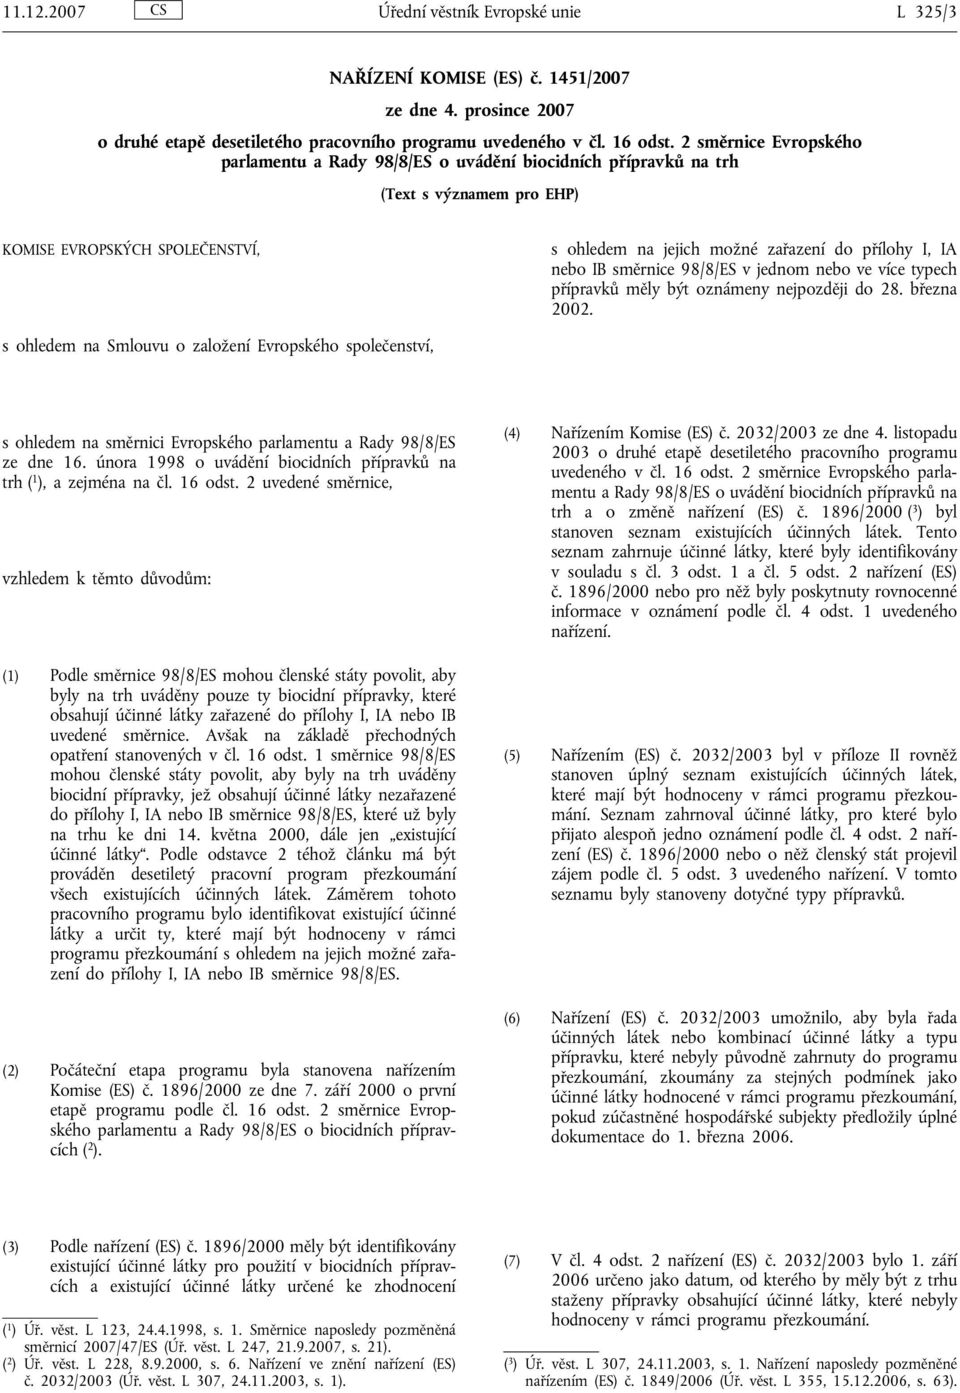 nebo IB směrnice 98/8/ES v jednom nebo ve více typech přípravků měly být oznámeny nejpozději do 28. března 2002.